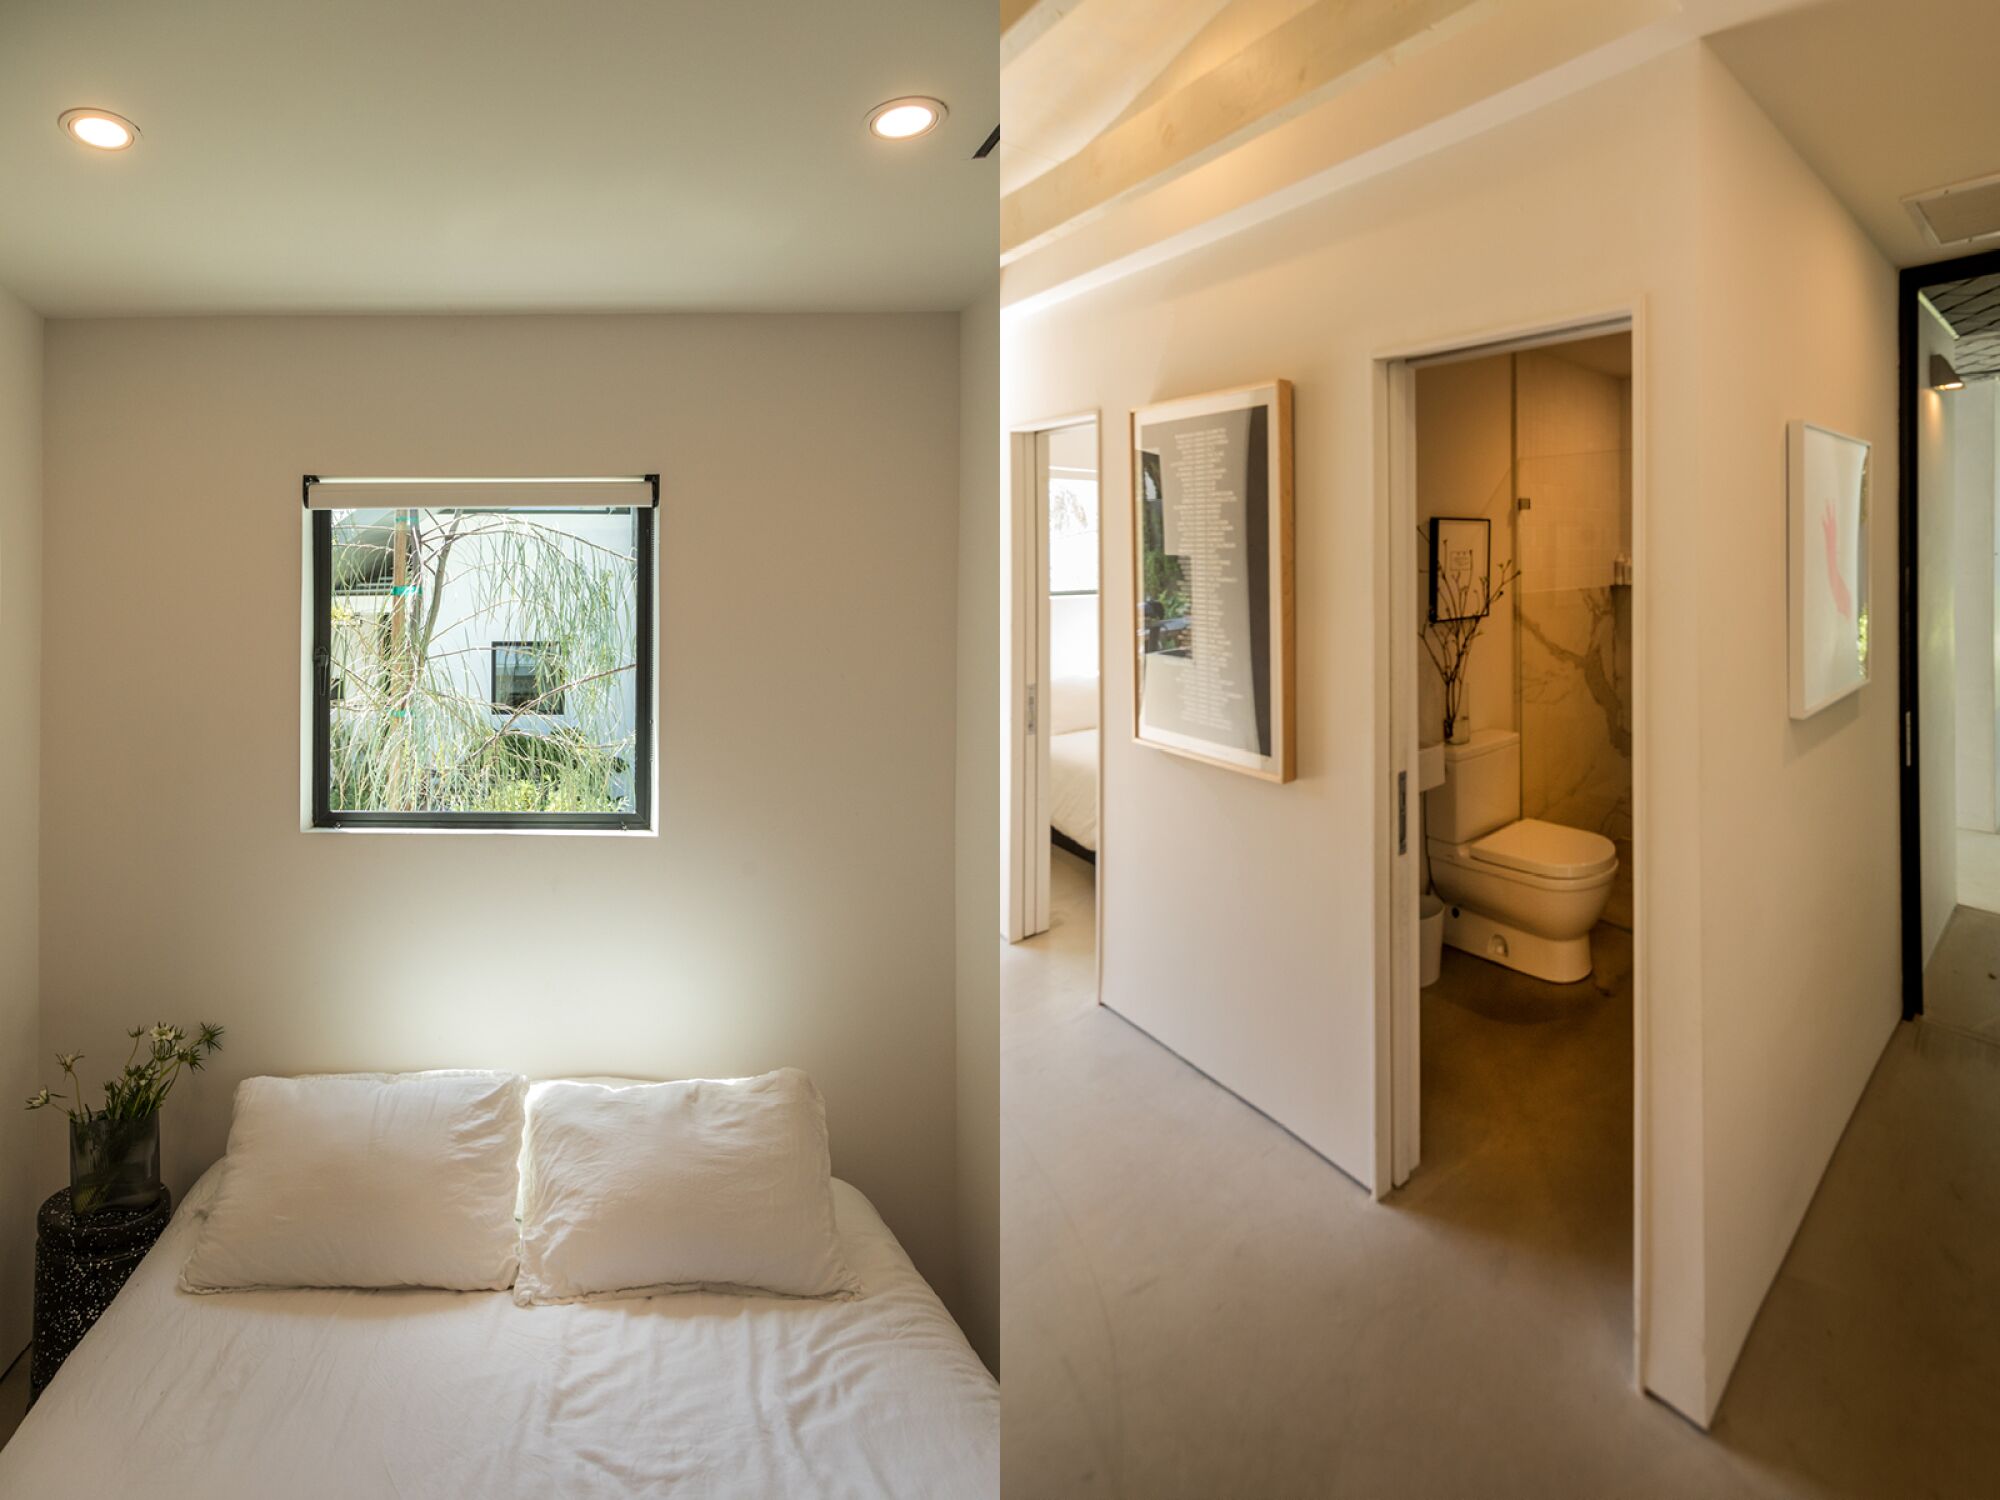 Fotos emparejadas de un dormitorio y un baño vislumbrados a través de una puerta.